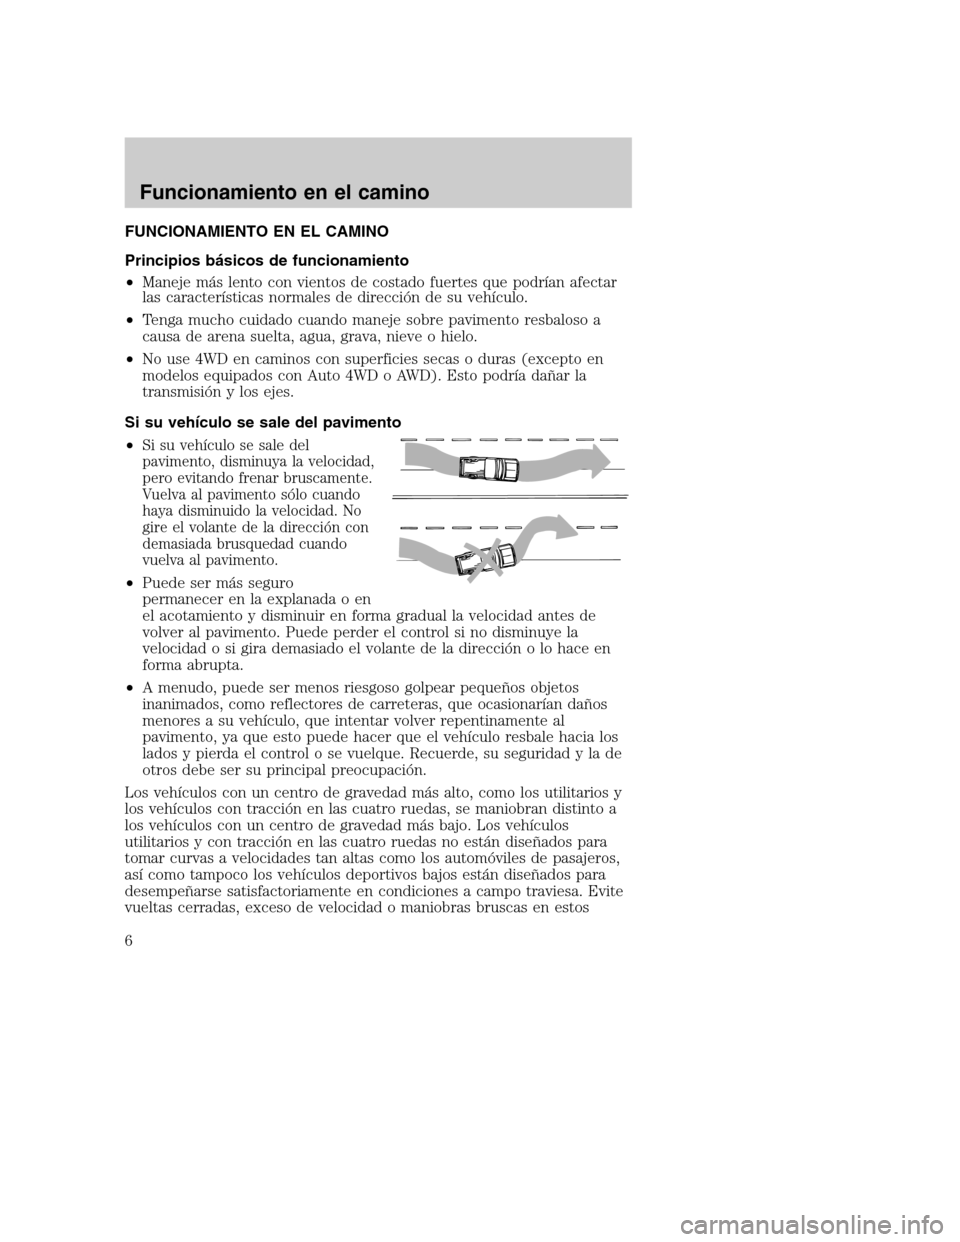 Mercury Mountaineer 2003  Manual de Usuario (in Spanish) FUNCIONAMIENTO EN EL CAMINO
Principios básicos de funcionamiento
•Maneje más lento con vientos de costado fuertes que podrían afectar
las características normales de direccióndesuvehículo.
•